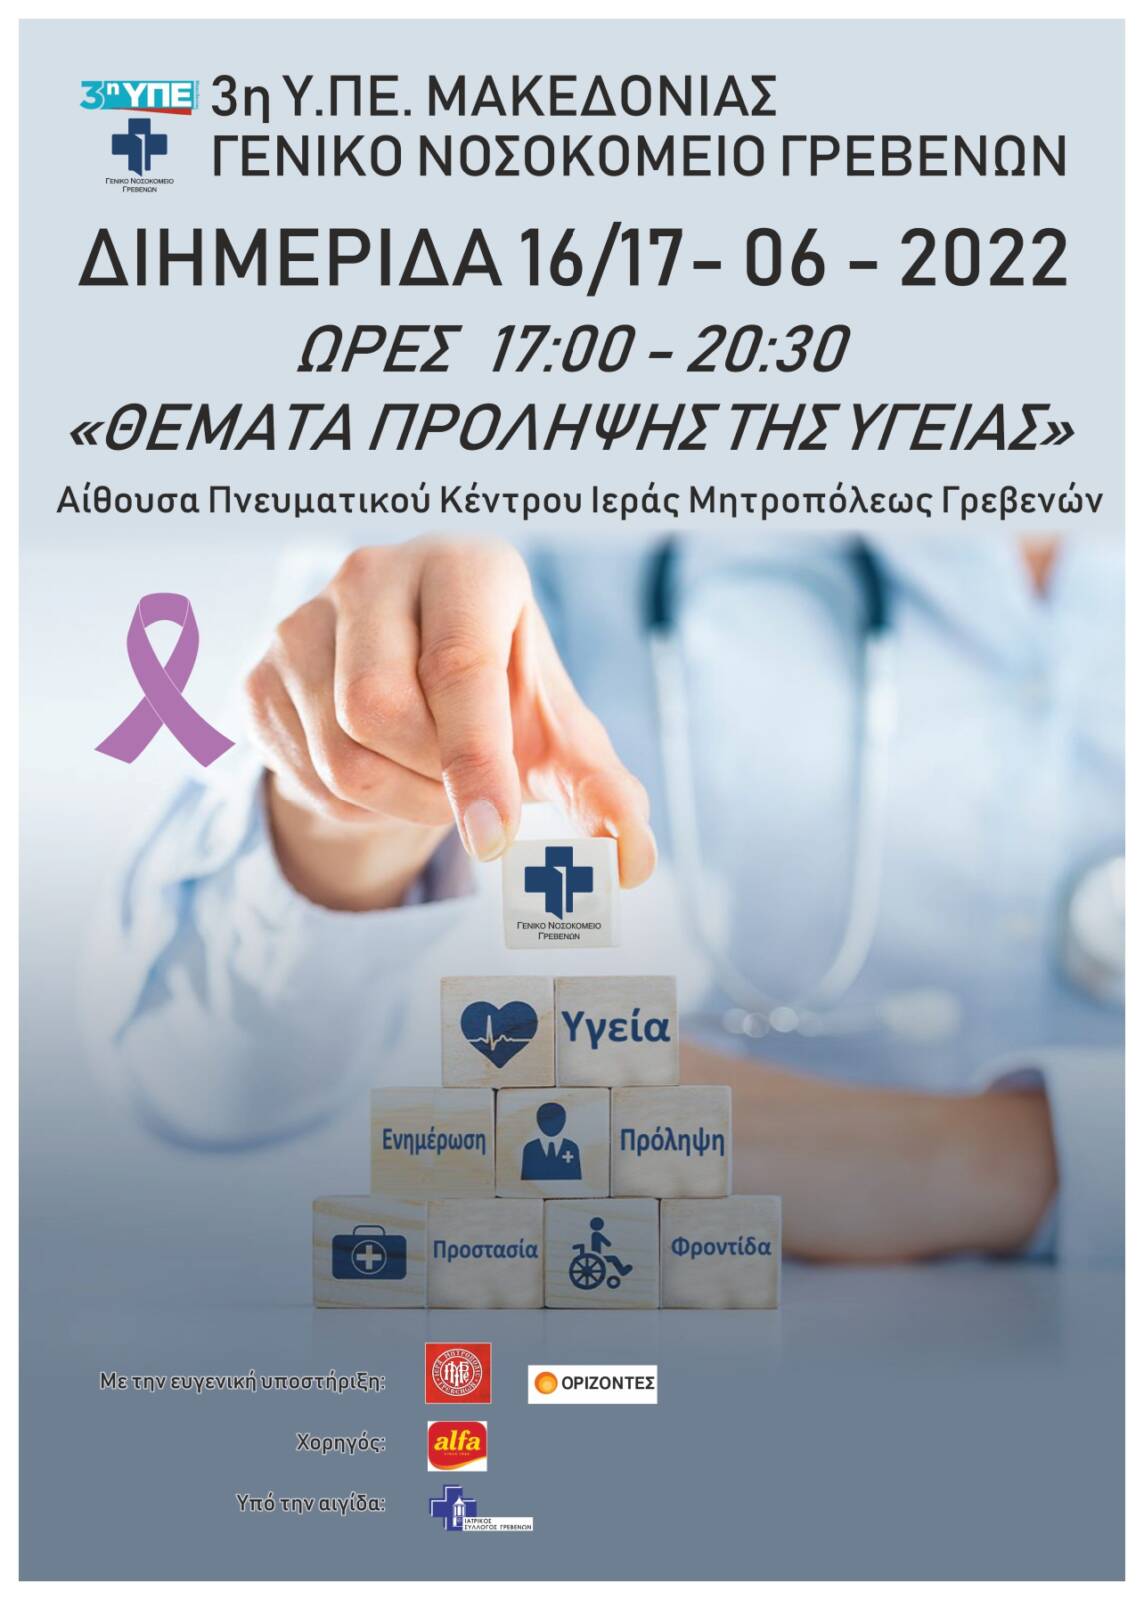 Γενικό Νοσοκομείο Γρεβενών: Διημερίδα με θέματα πρόληψης της υγείας την Πέμπτη 16 και την Παρασκευή 17 Ιουνίου 2022